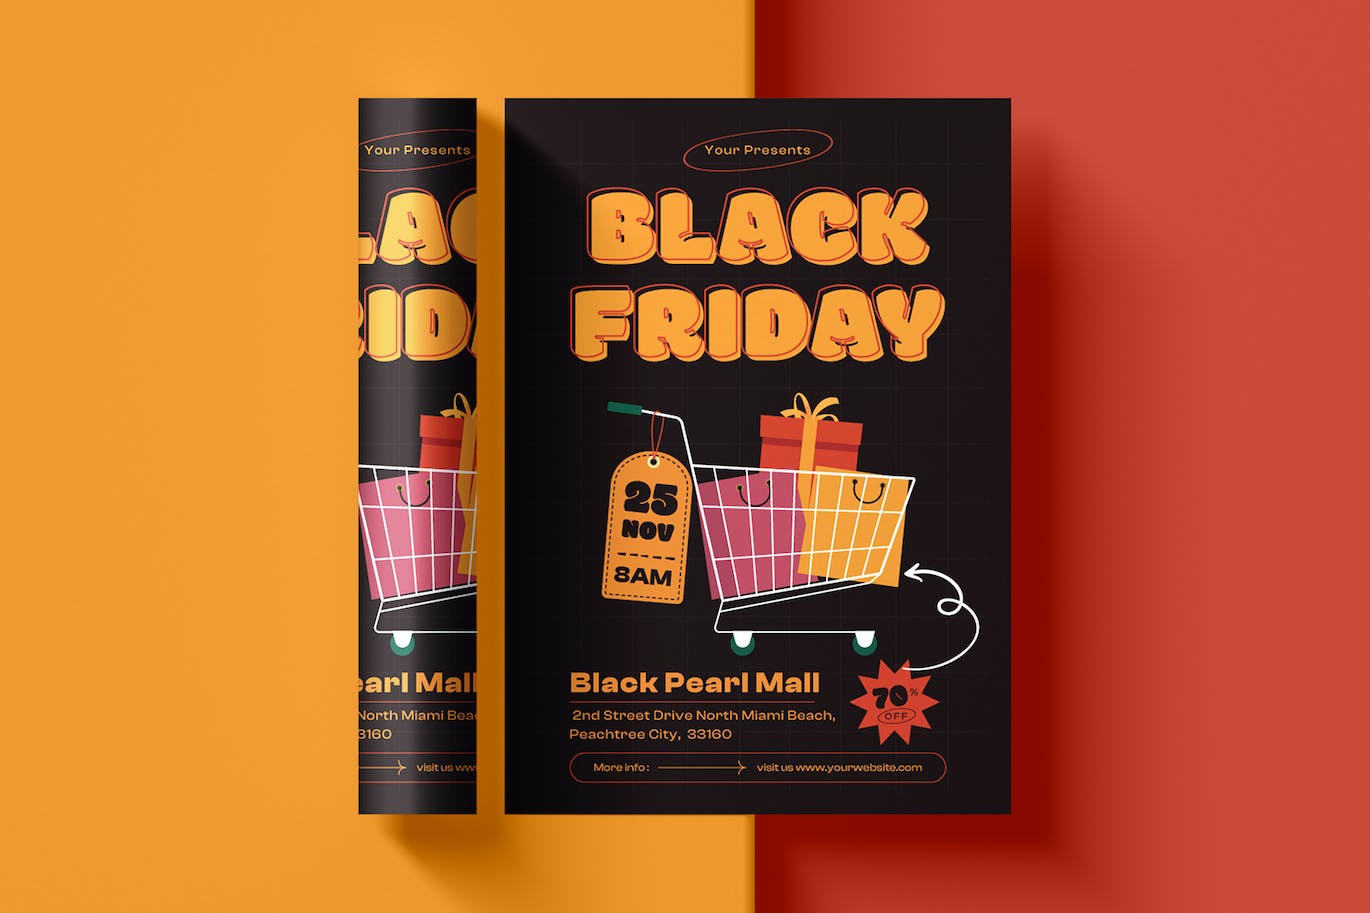 黑色星期五购物宣传单设计 Black Friday Flyer Template 设计素材 第1张